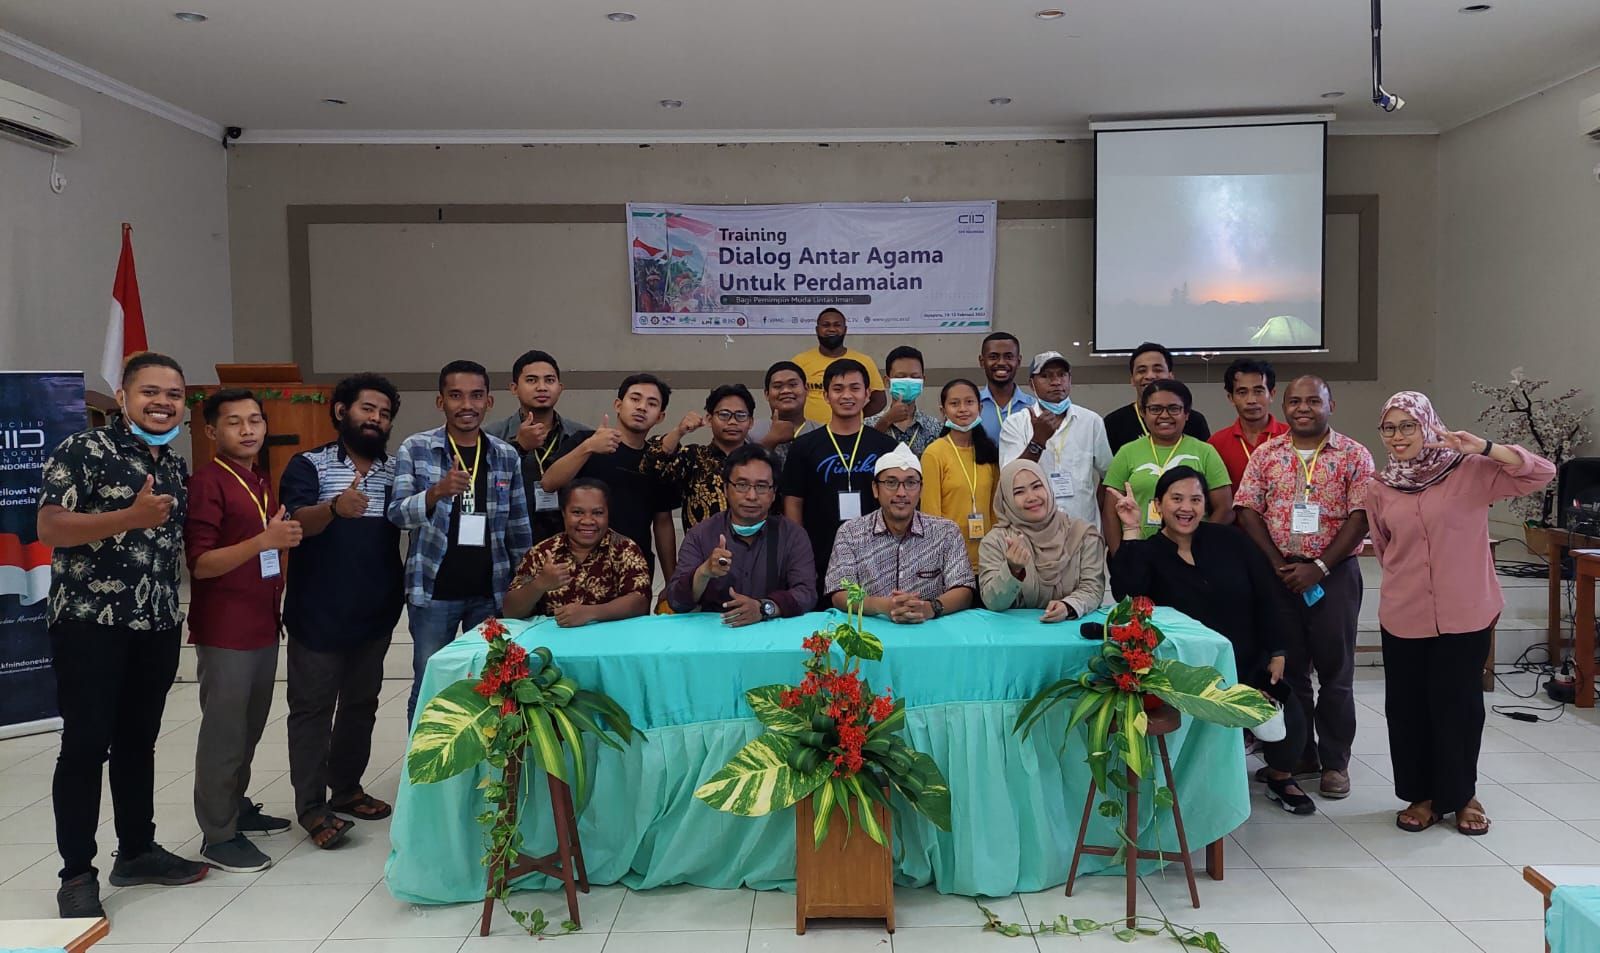 “KFN Indonesia untuk Papua Tanah Damai”. Program ini didedikasikan untuk memperkuat kegiatan Dialog Antar Agama di Tanah Papua. Tampak Sejumlah Tokoh Agama Usai Diskusi Bersama.